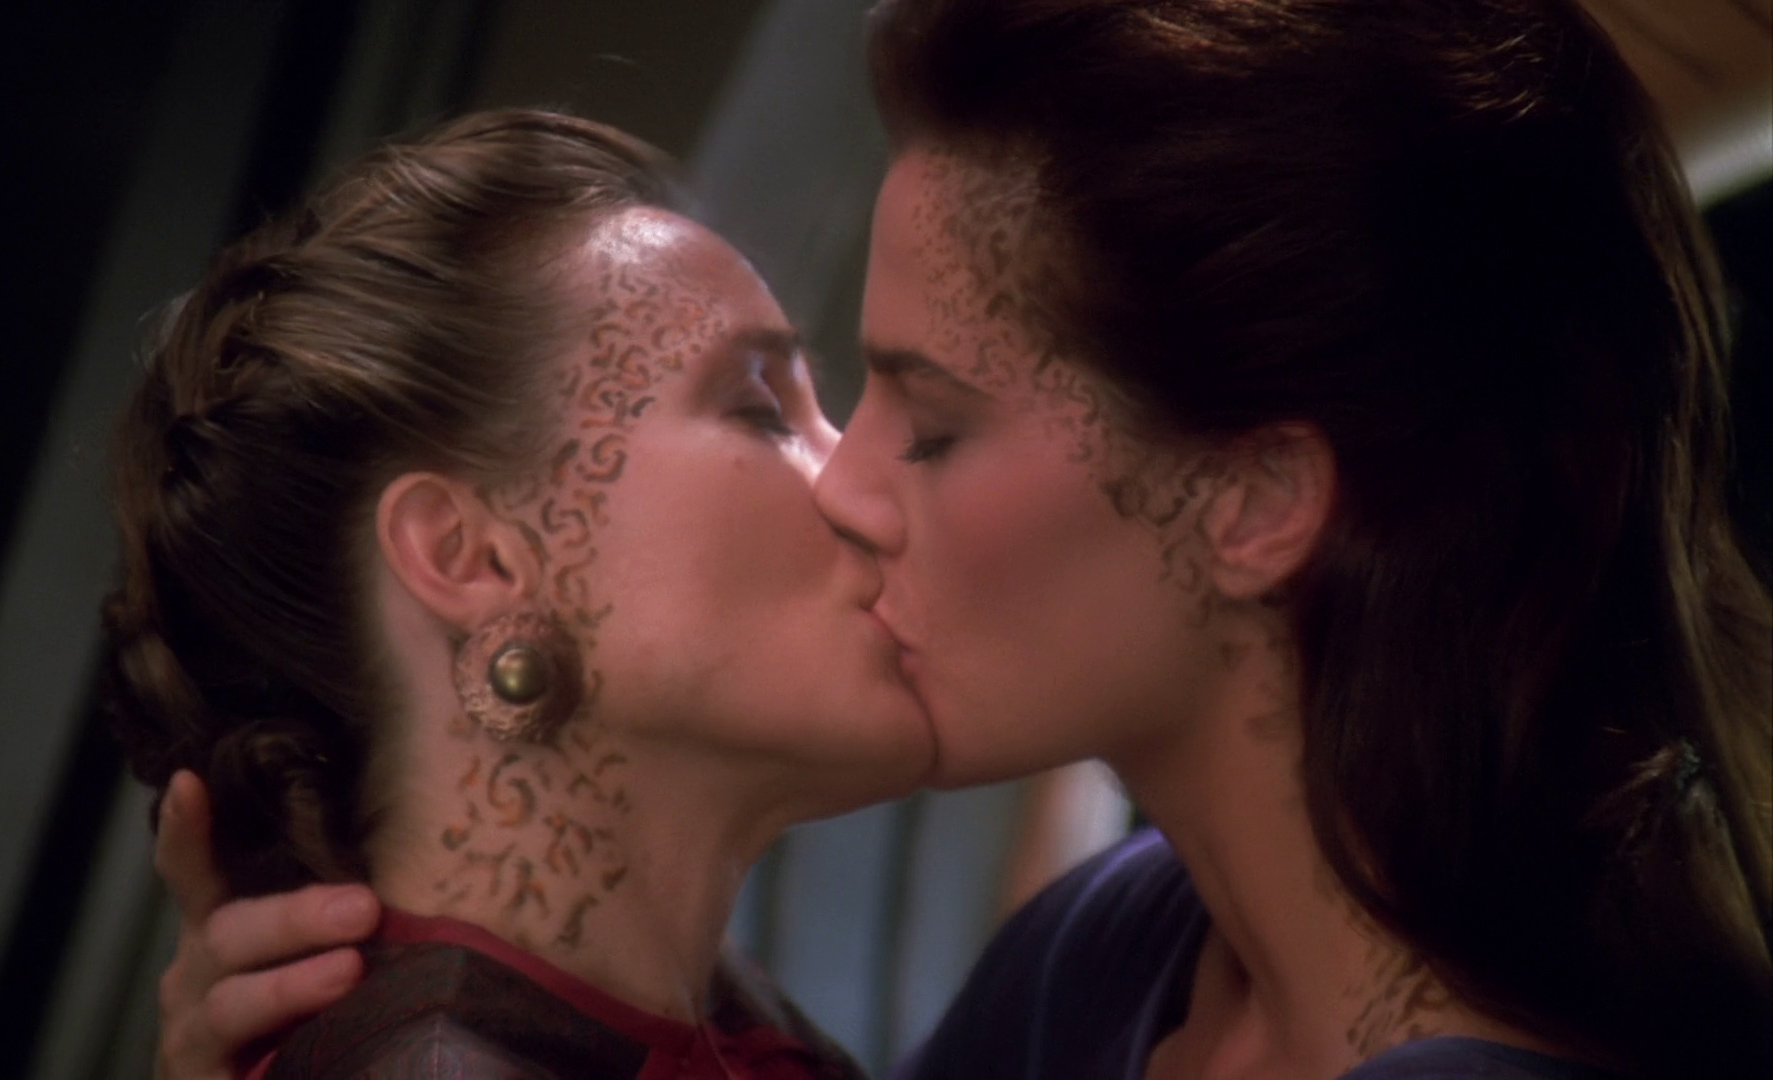 Deep Lesbian Kiss 103